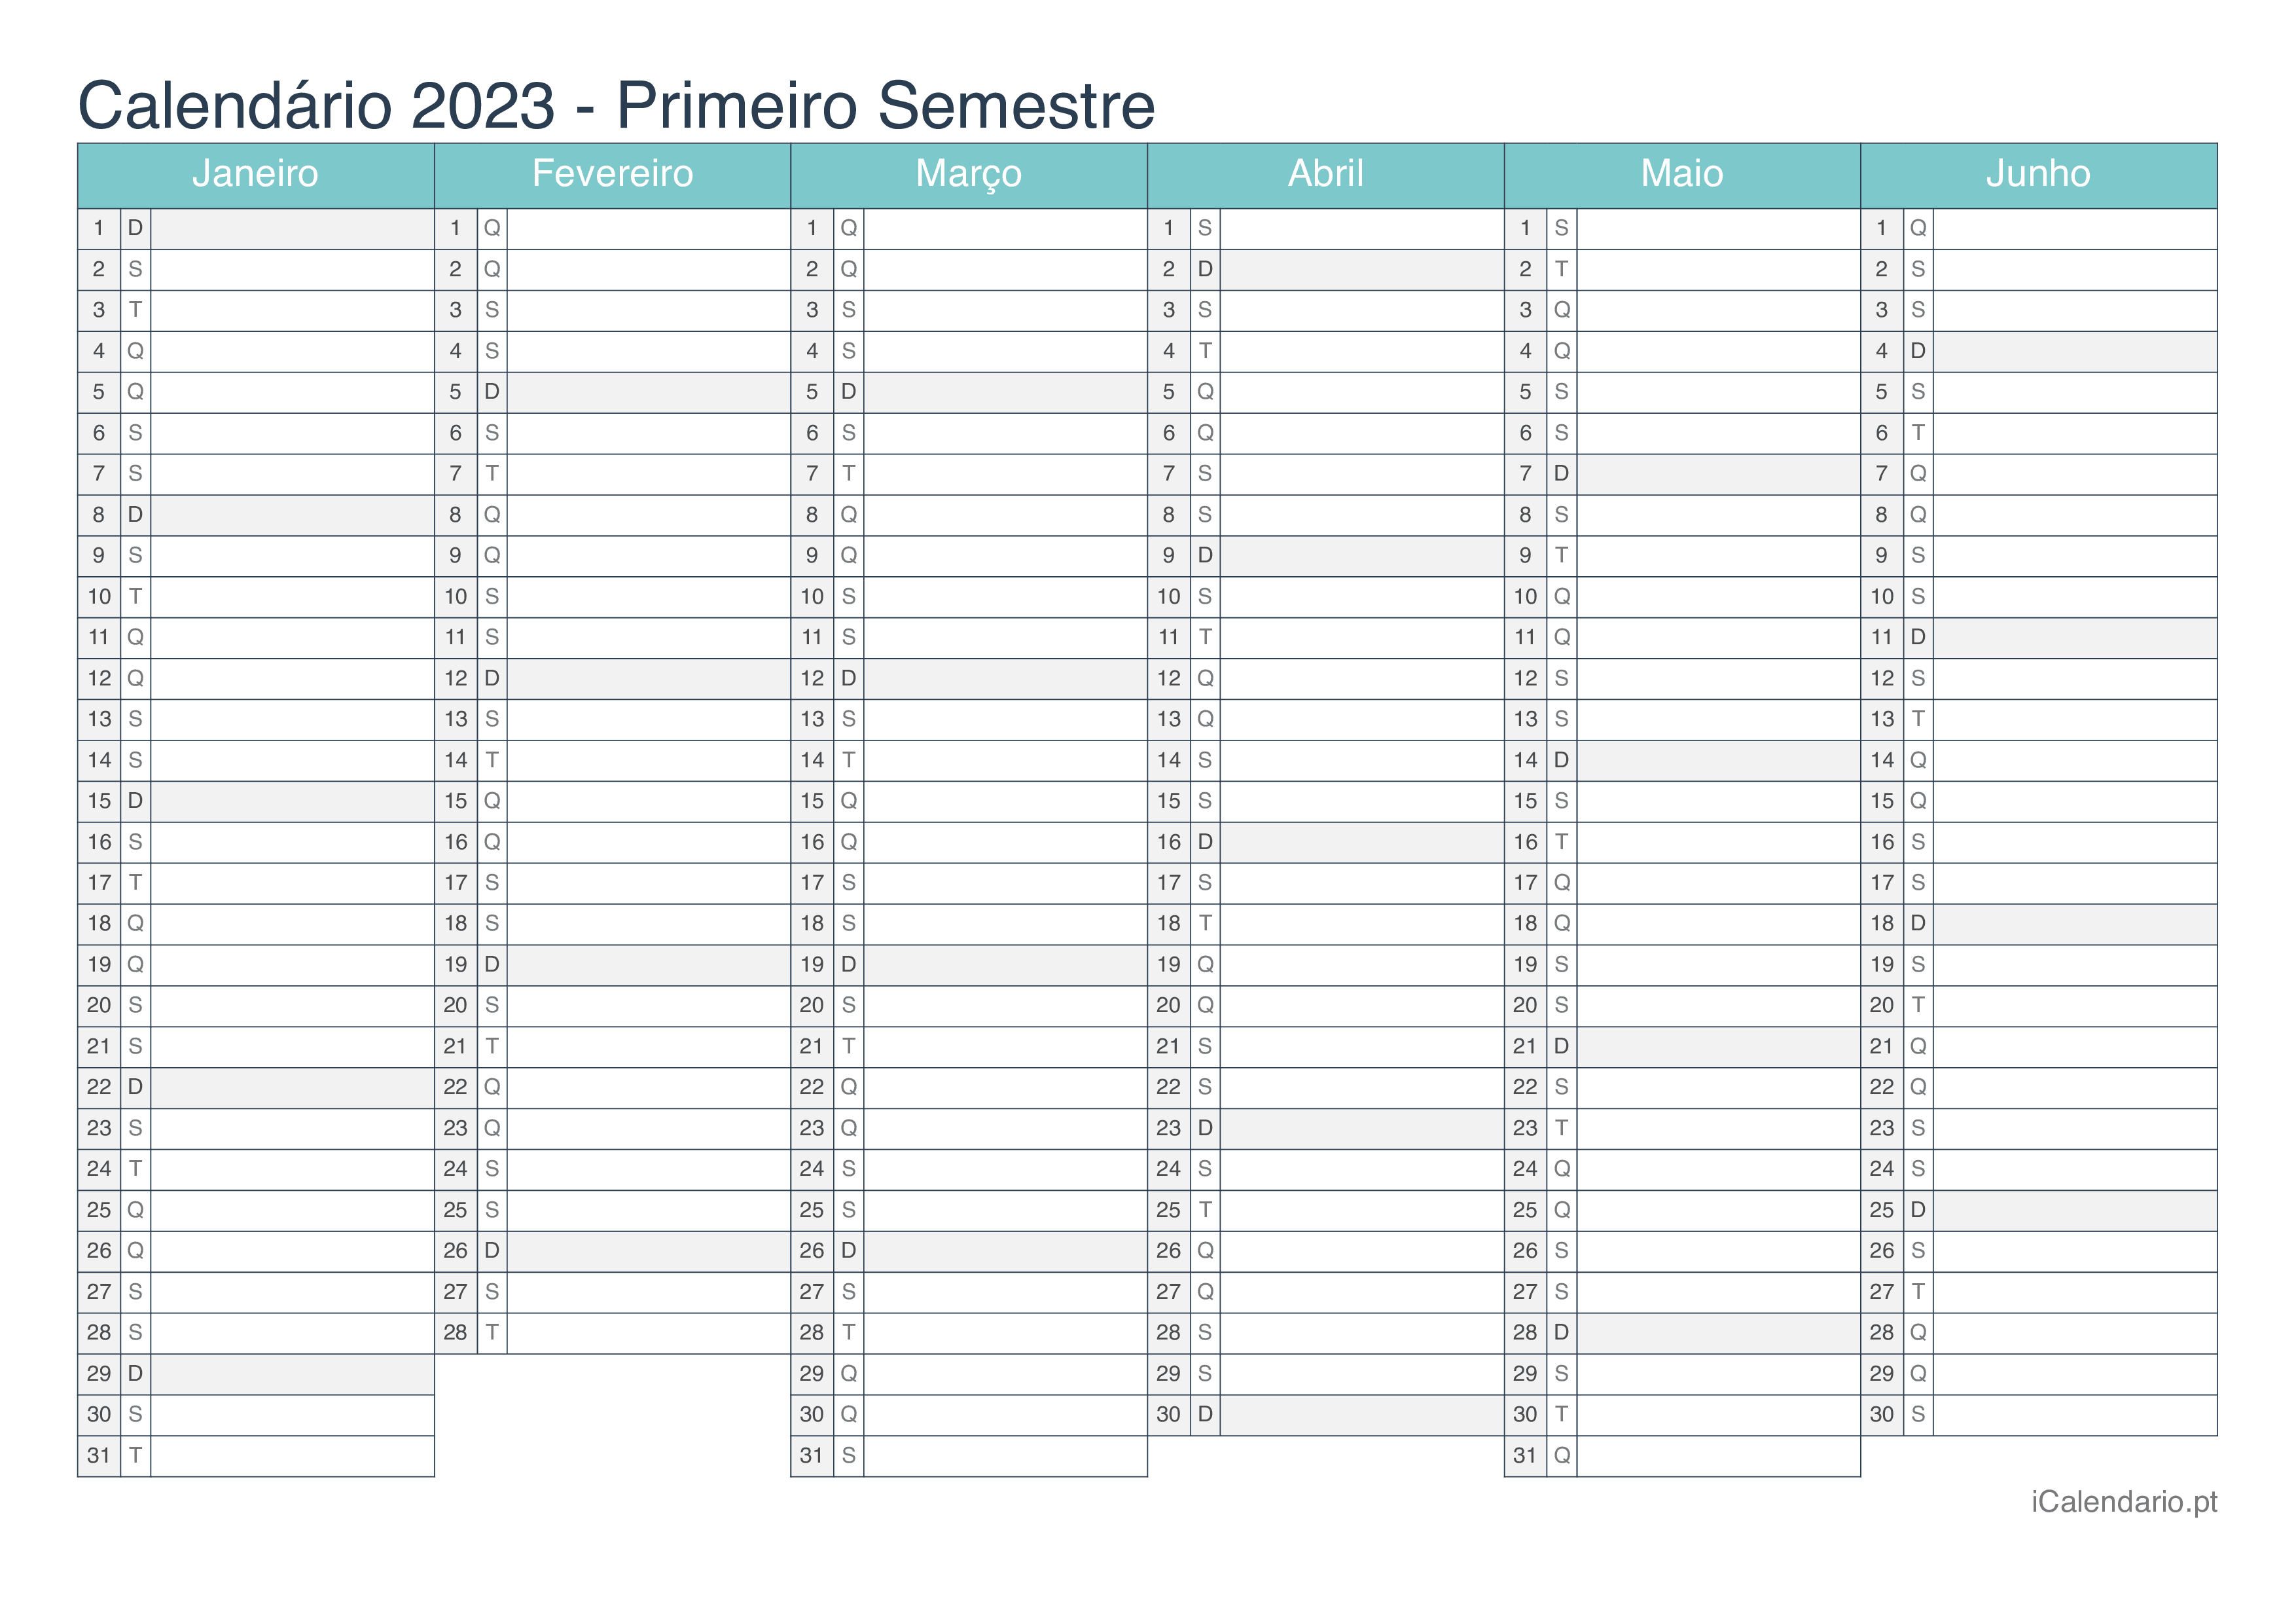 Calendário por semestre 2023 - Turquesa